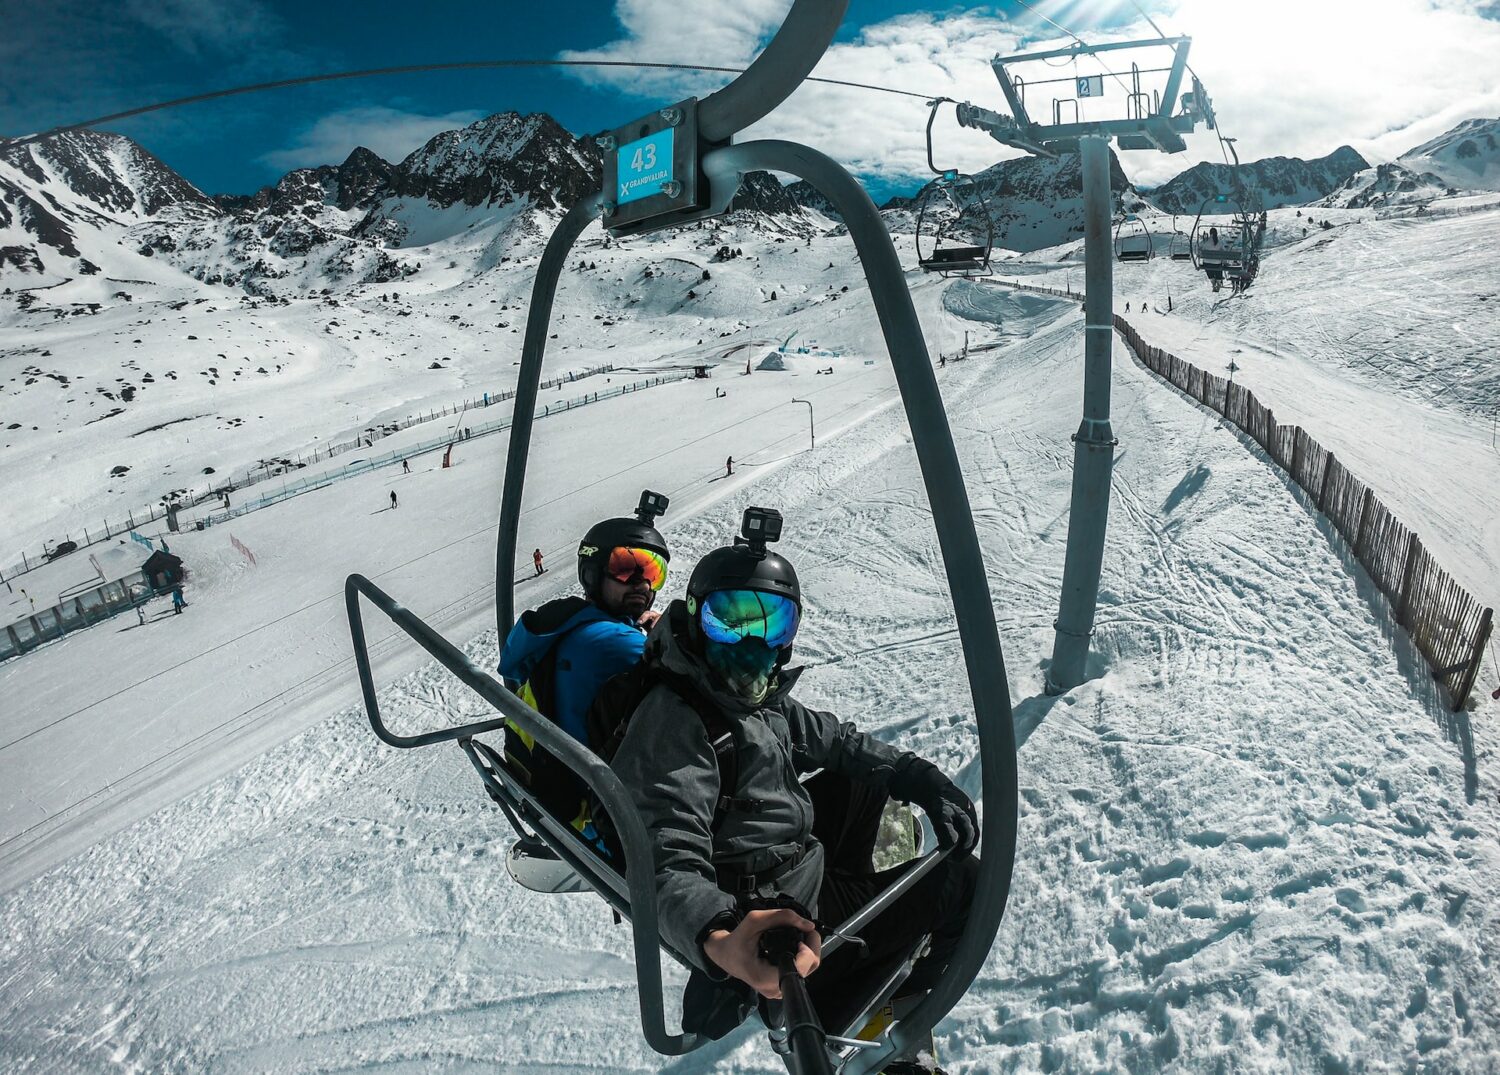 Duas pessoas andando em um teleférico ao redor de bastante neve em uma estação de esqui durante o dia, ilustrando post chip celular Andorra.